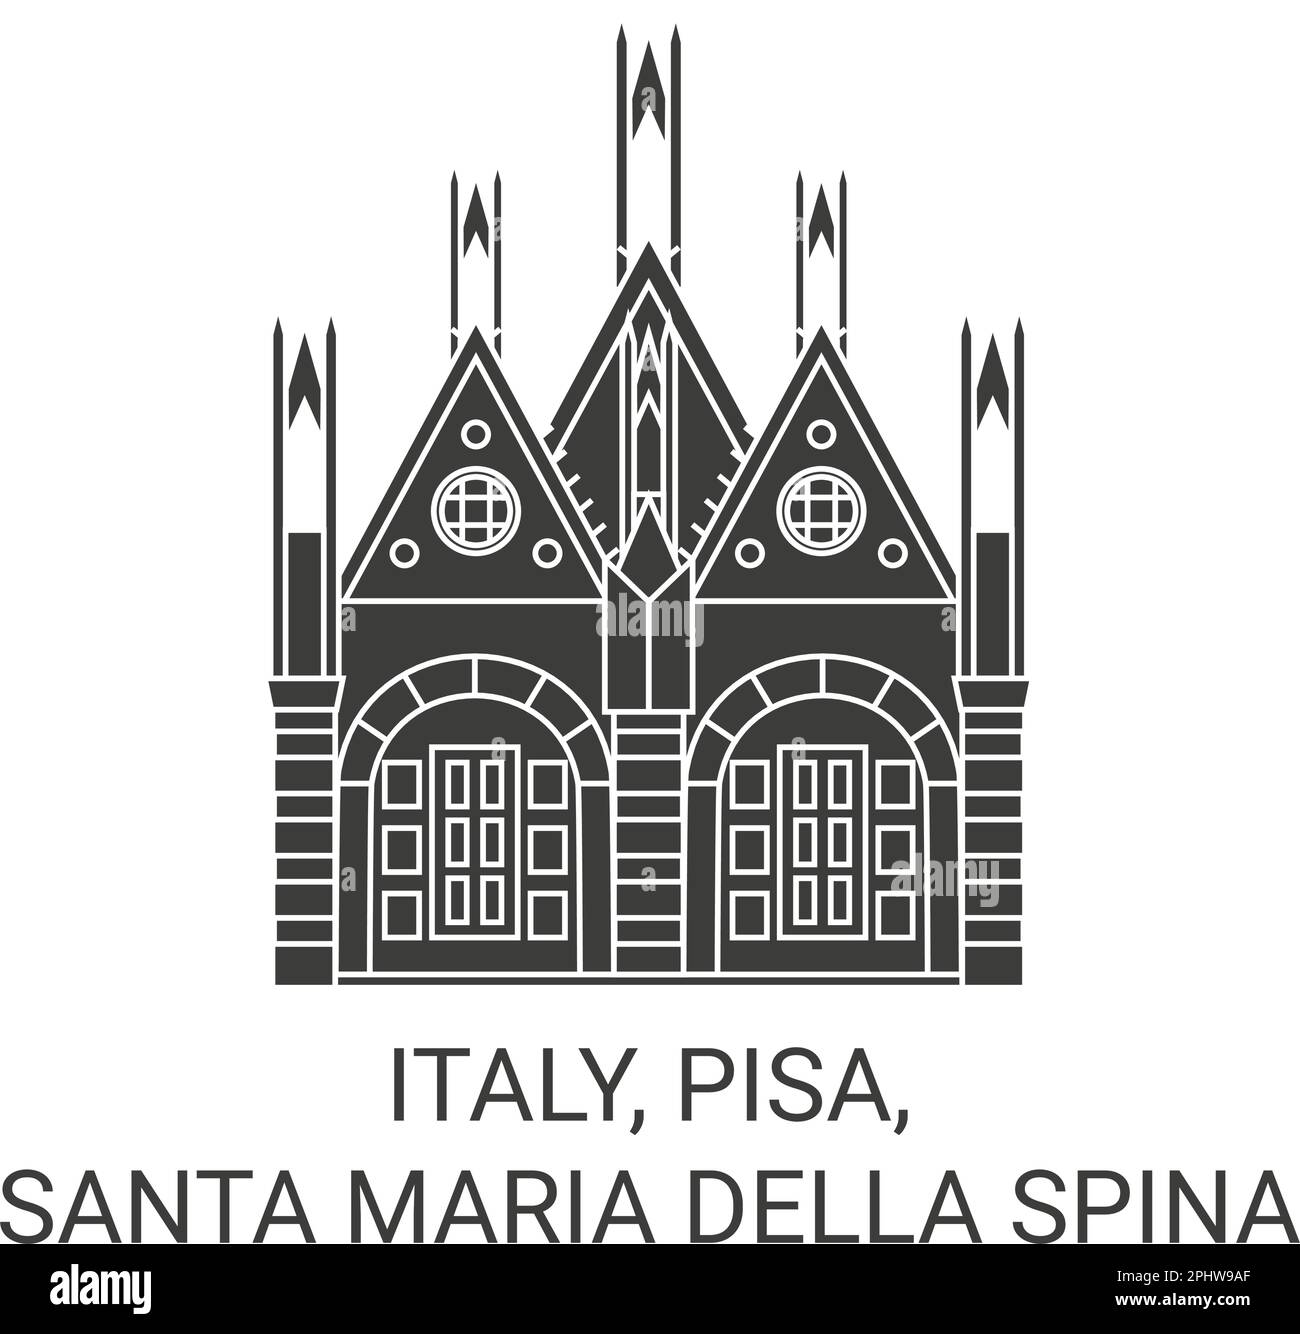 Italia, Pisa, Santa Maria della spina viaggio punto di riferimento vettoriale illustrazione Illustrazione Vettoriale